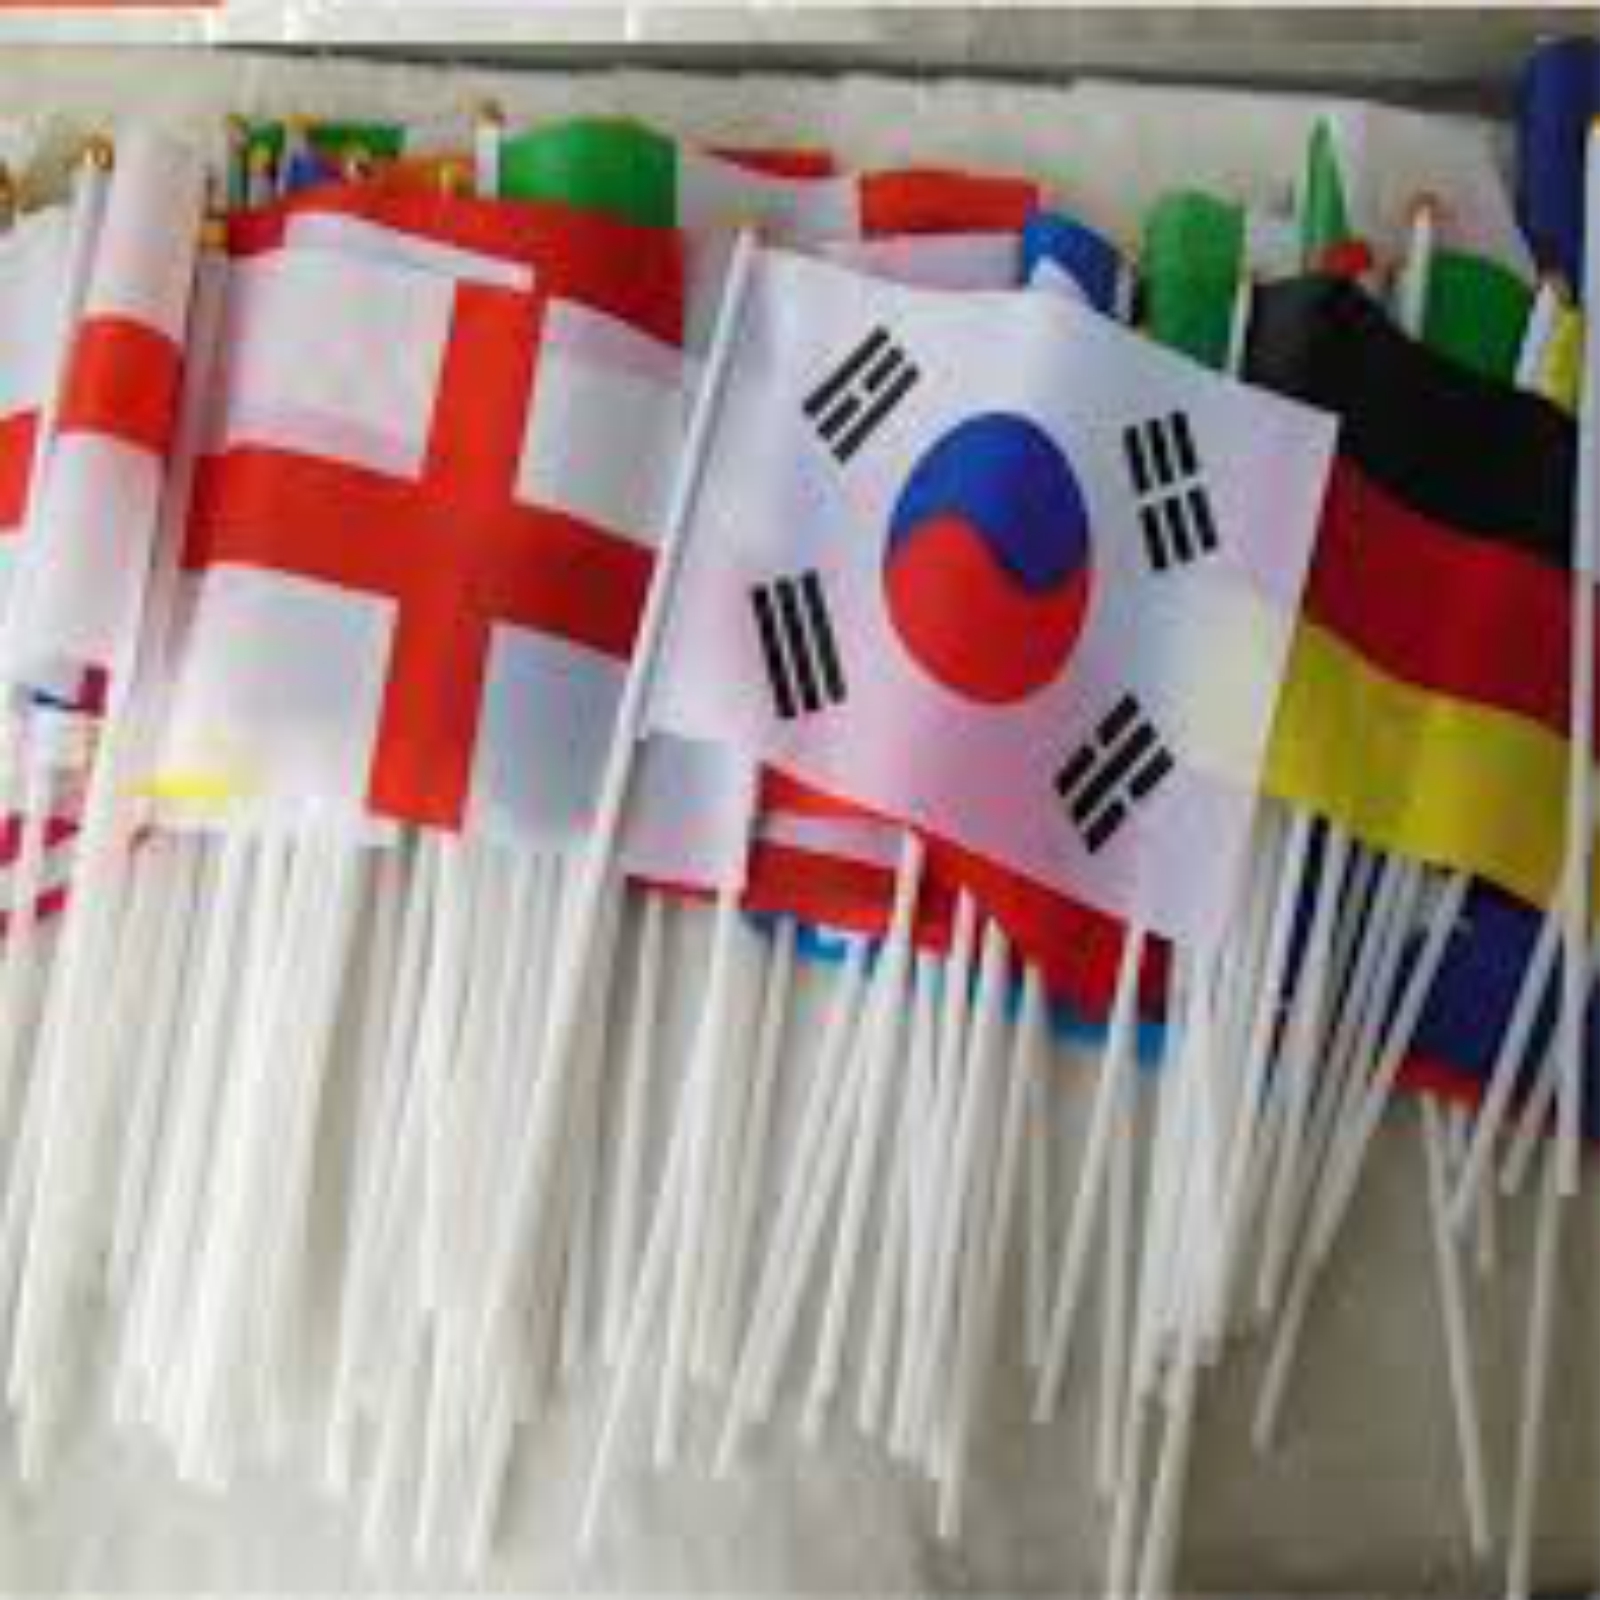 International Hand Flags